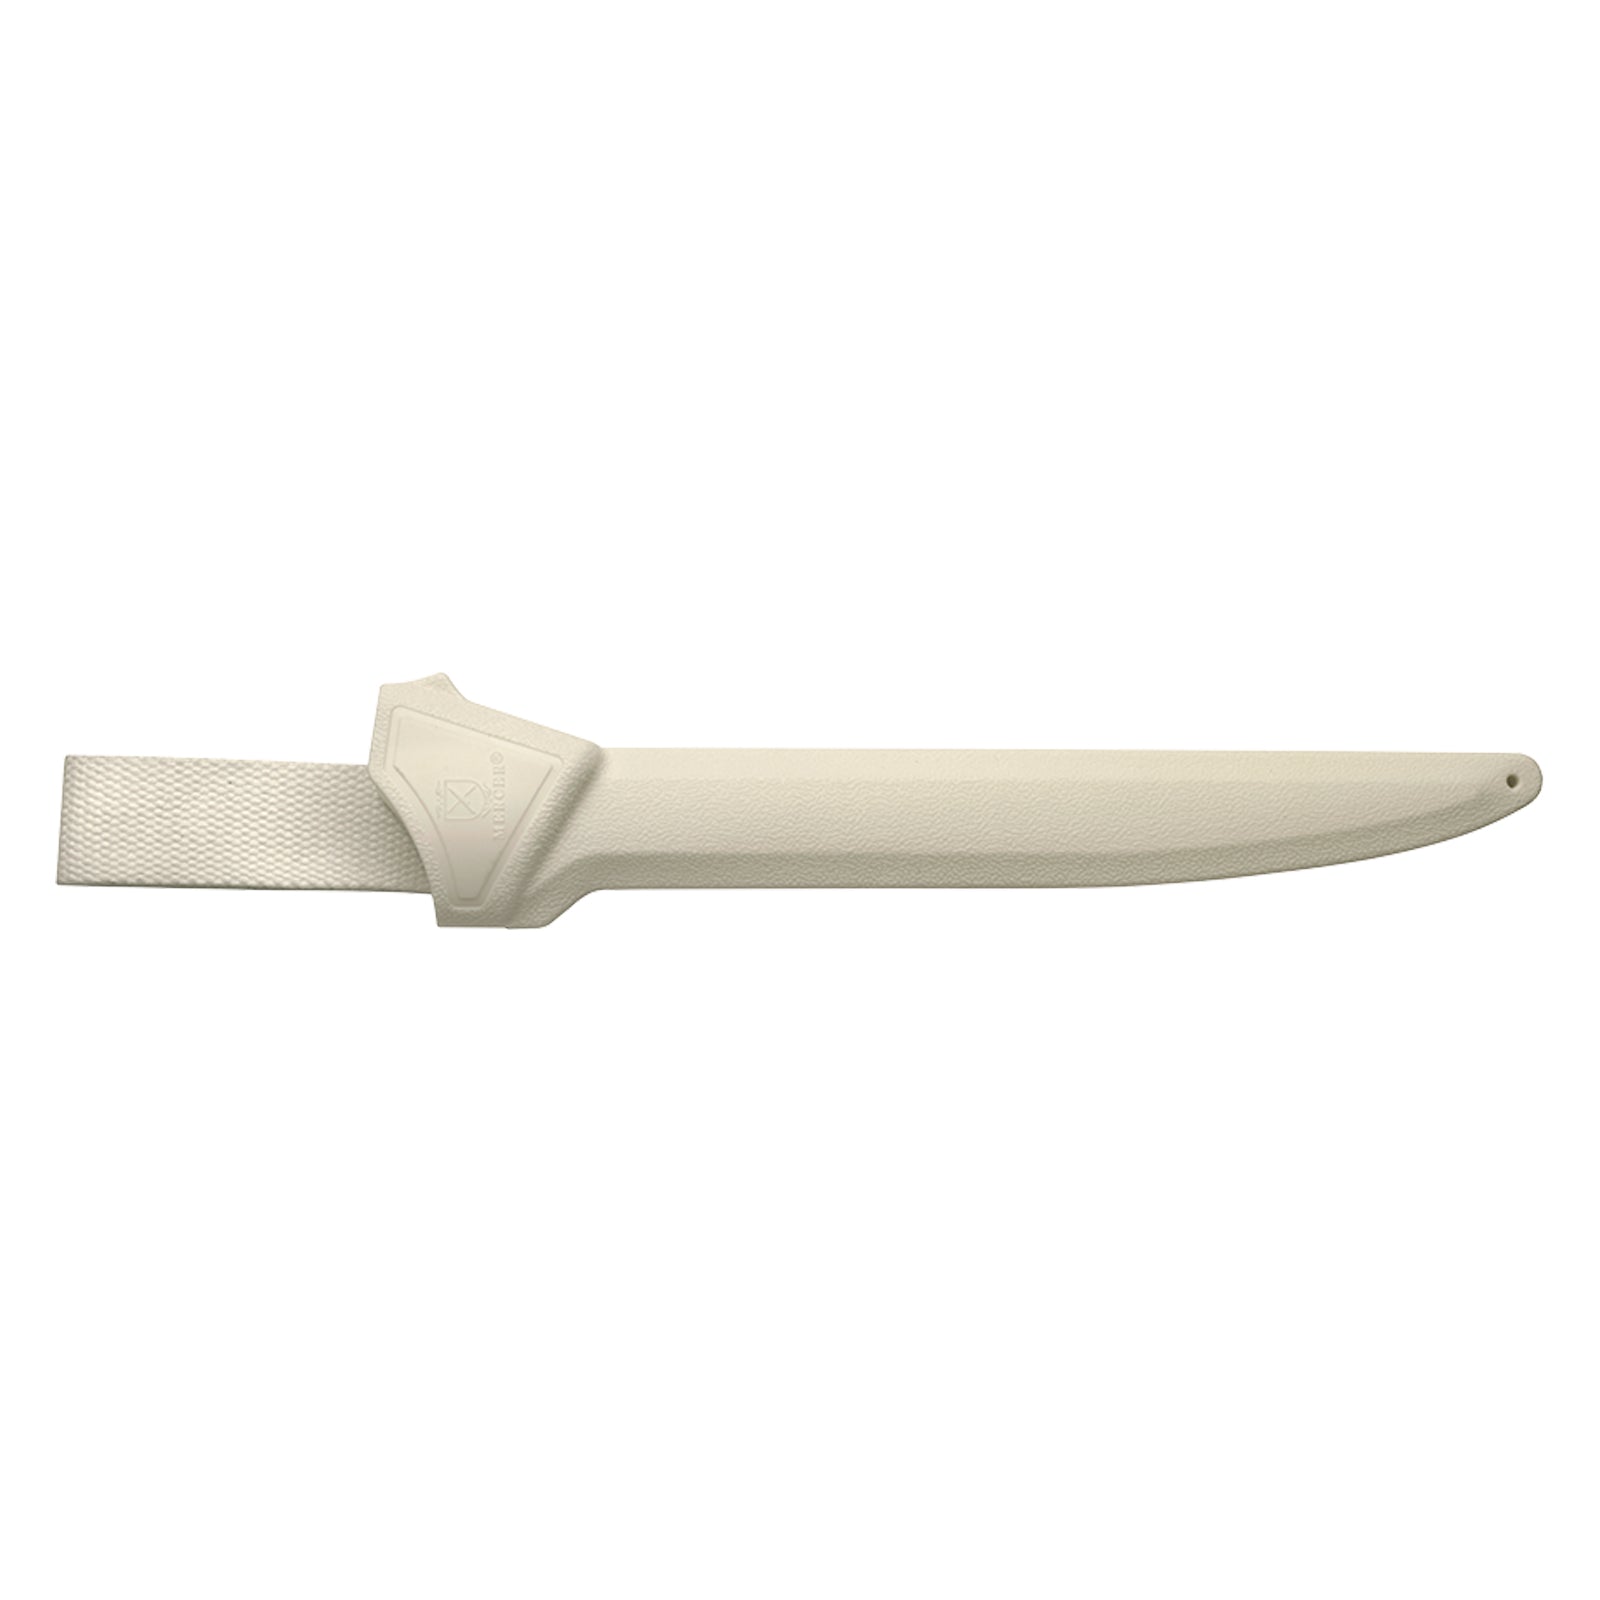 Shealth for Fillet Knives - White